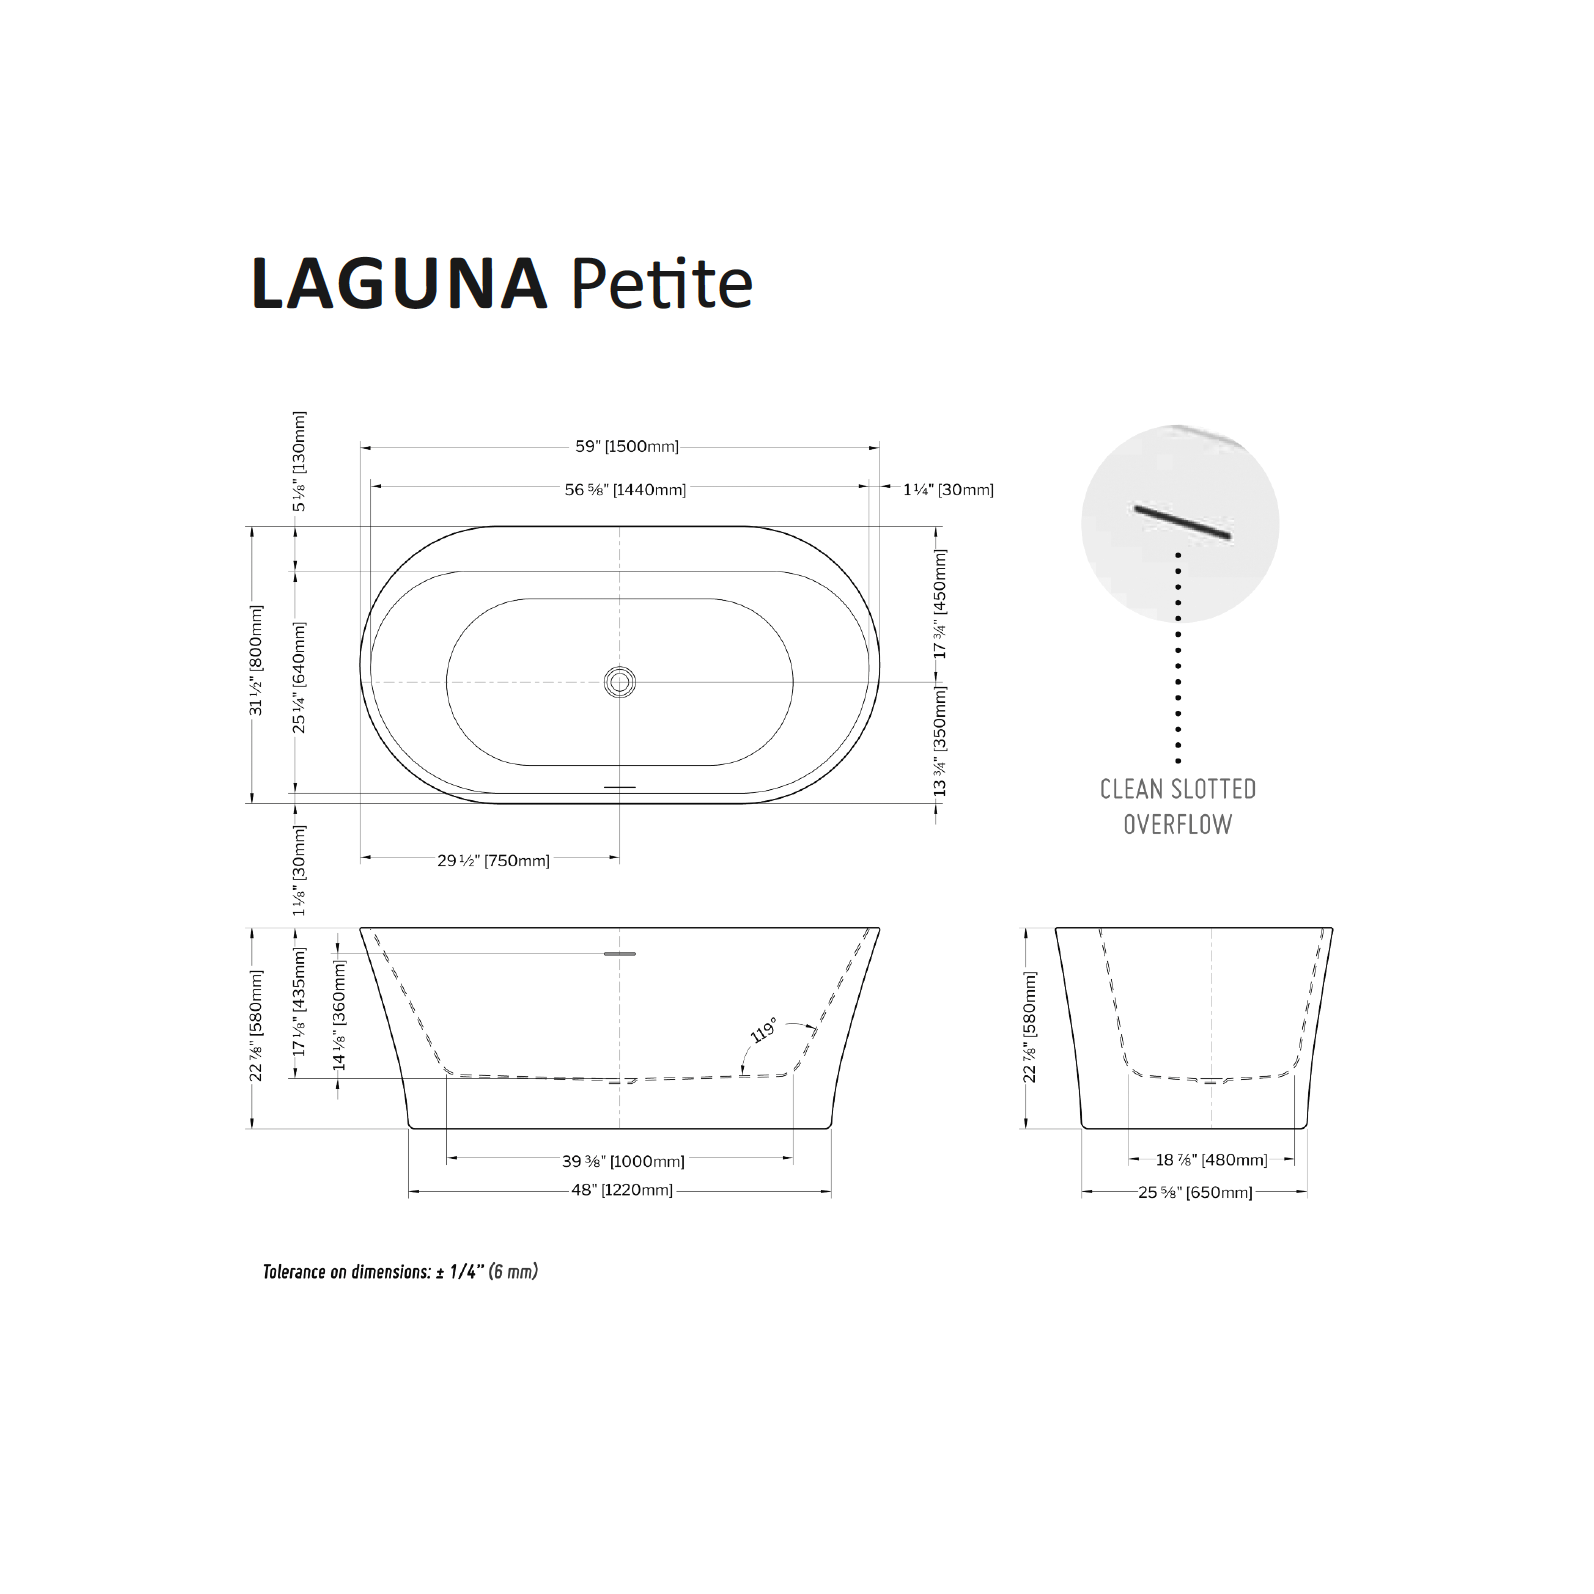 Laguna Petite Tub Specifications